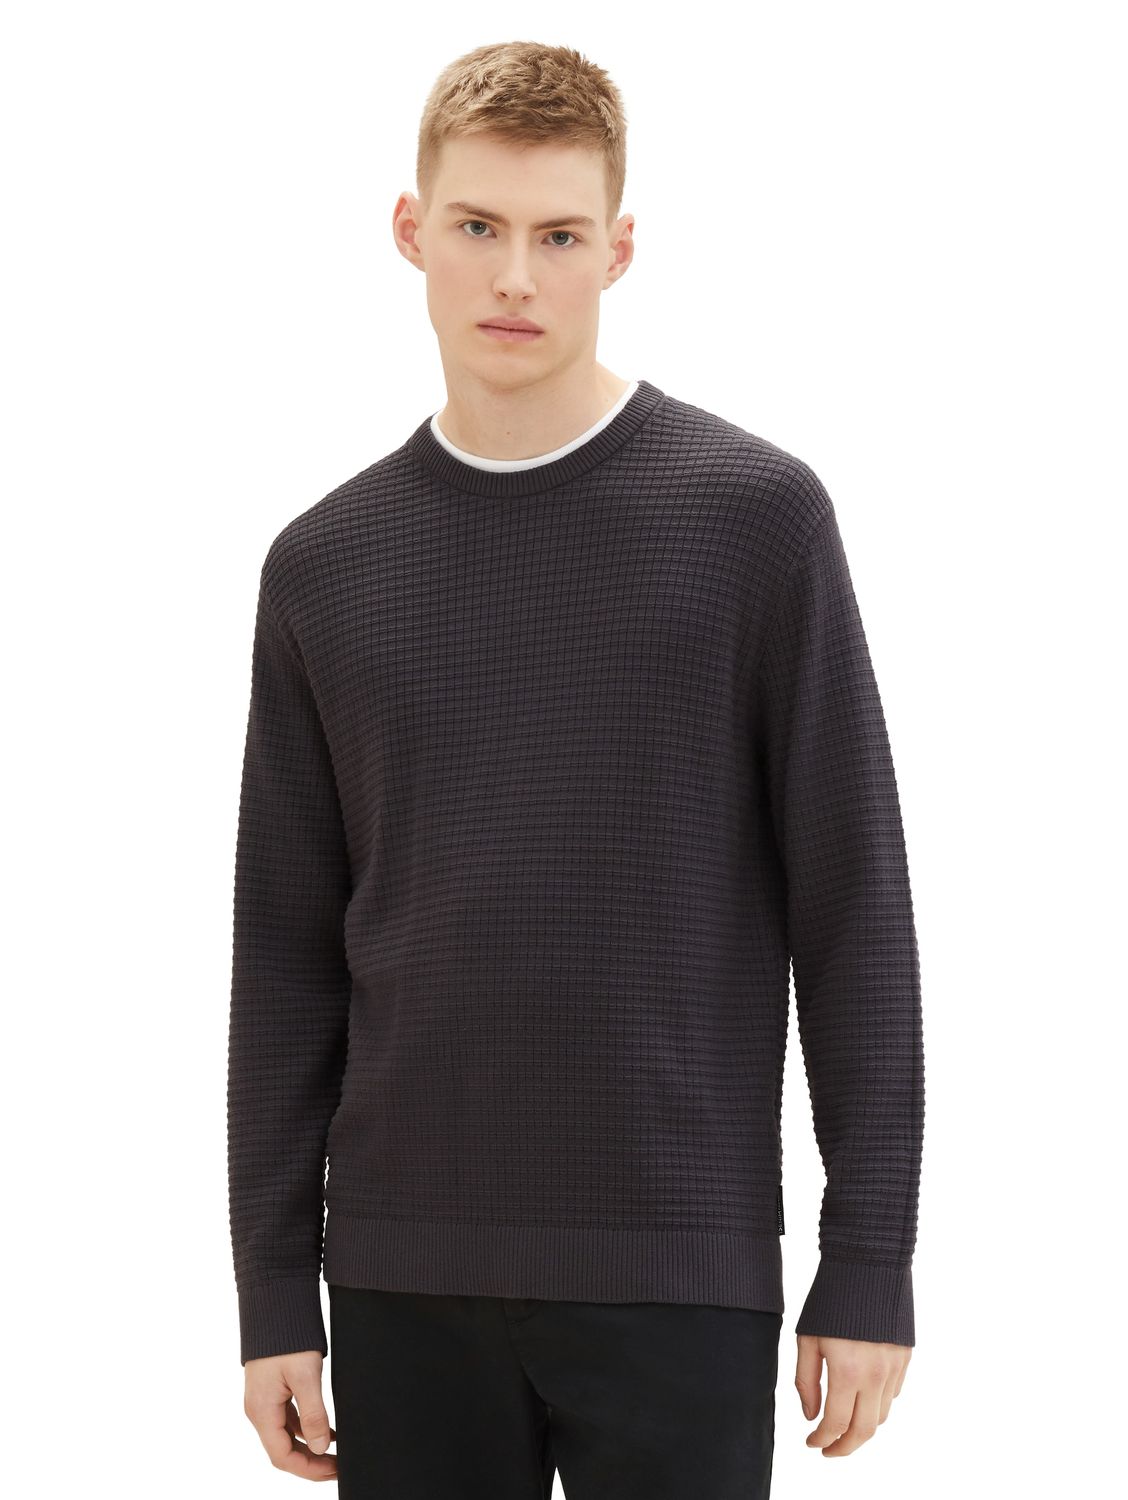 Пуловер TOM TAILOR Denim STRUCTURED DOUBLELAYER, серый пуловер tom tailor denim structured basic серый